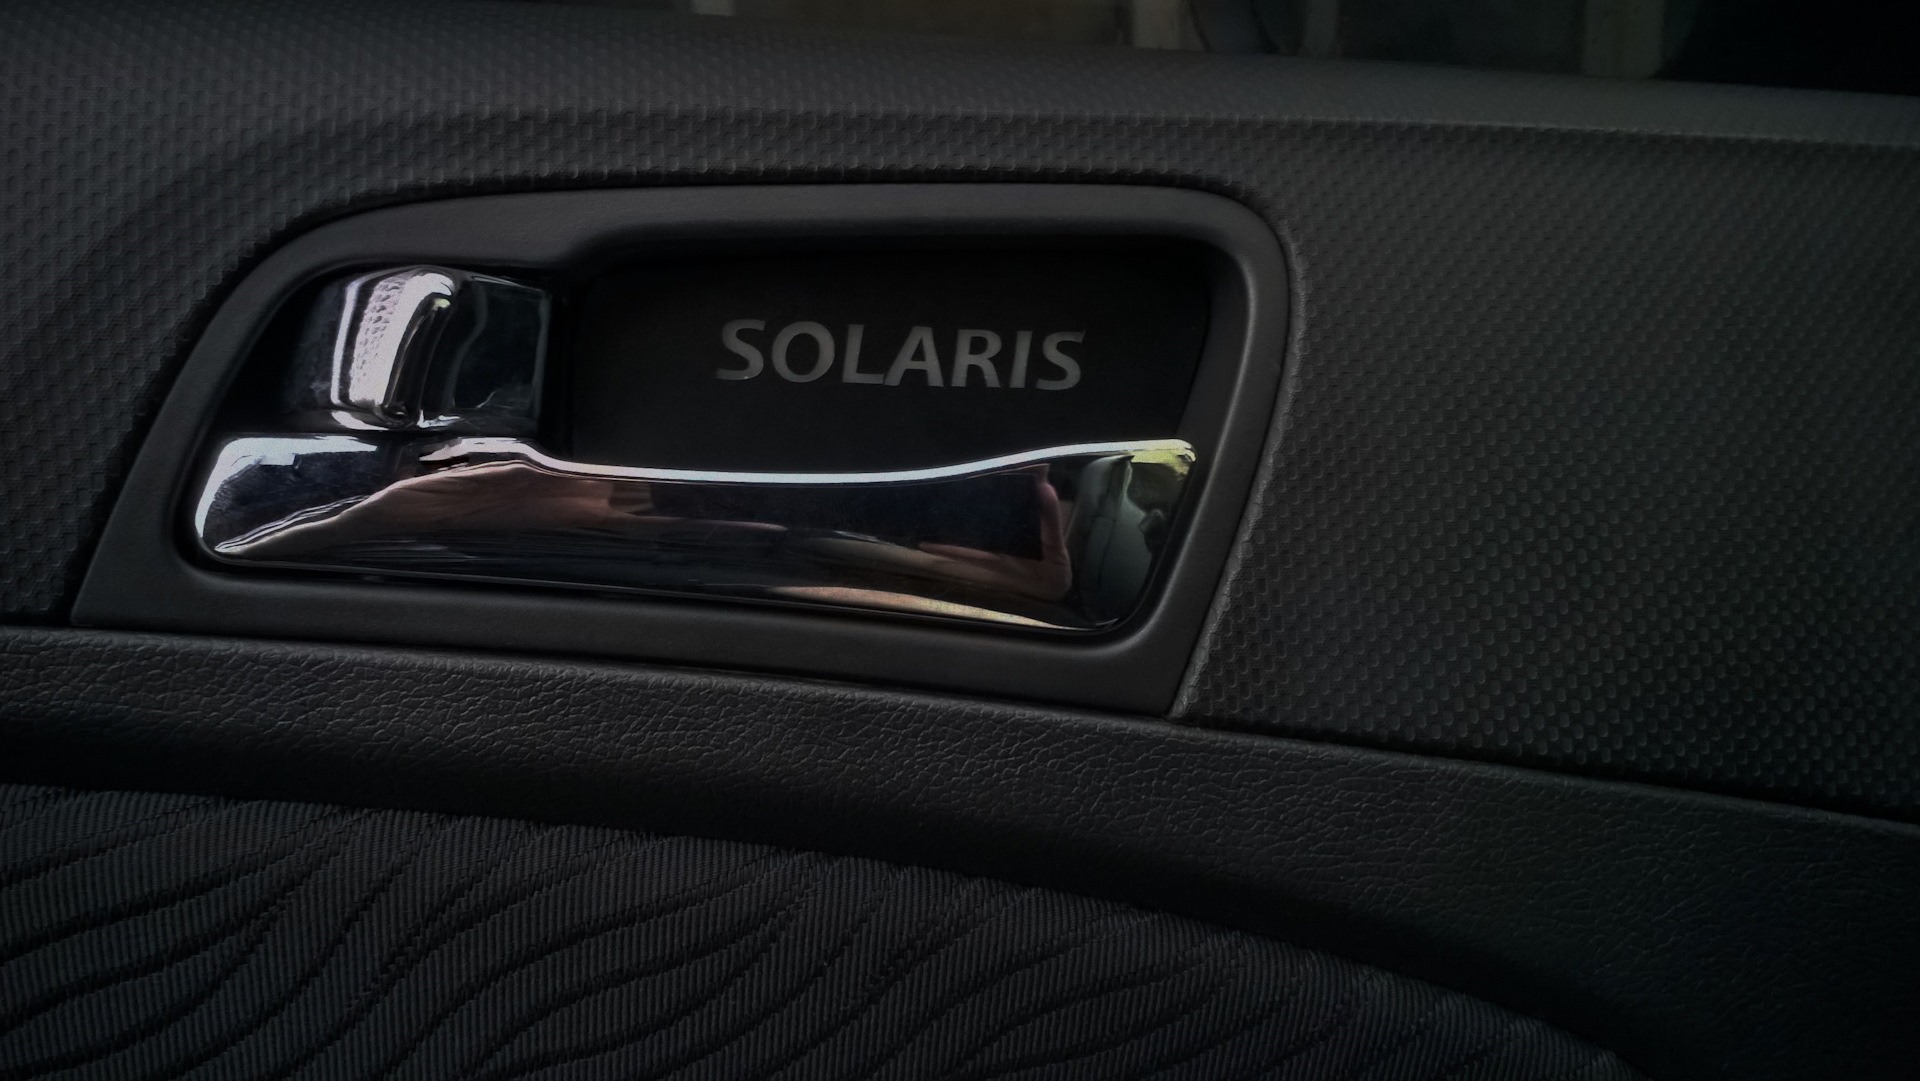 Дверная ручка хендай солярис. Подсветка ручек дверей Hyundai Solaris 1. Подсветка ручек Hyundai Solaris. Подсветка дверных ручек Хендай Солярис. Подсветка ручек Хендай Солярис 2012.